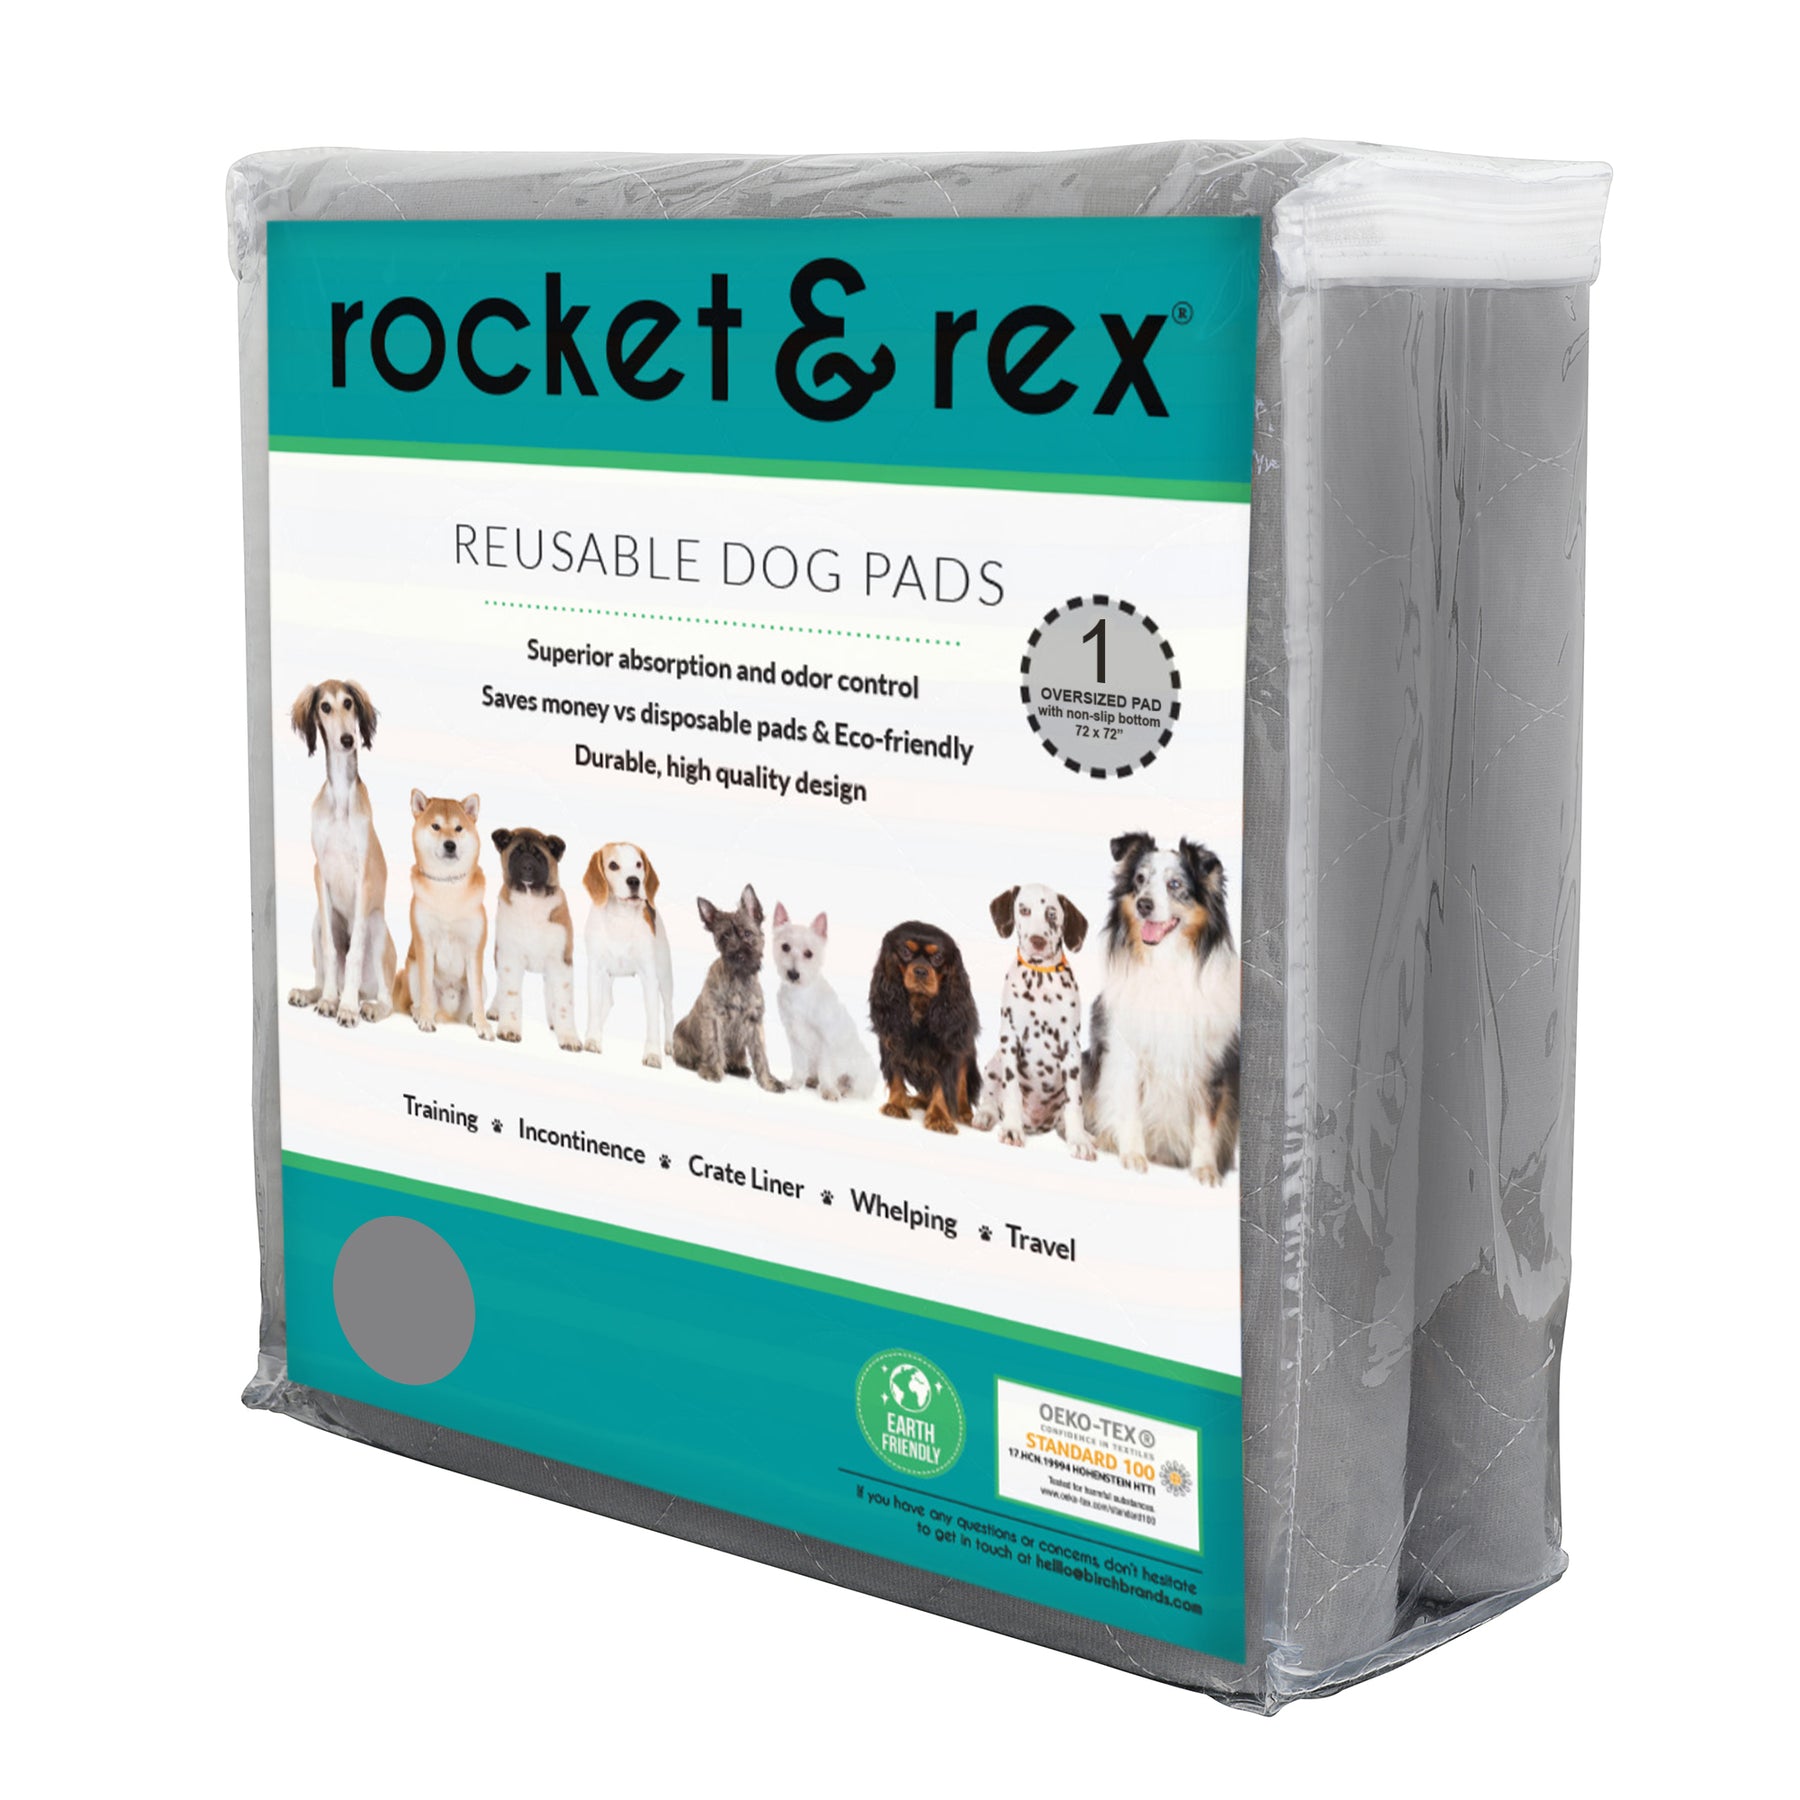 Washable Reusable Dog Pee Pads